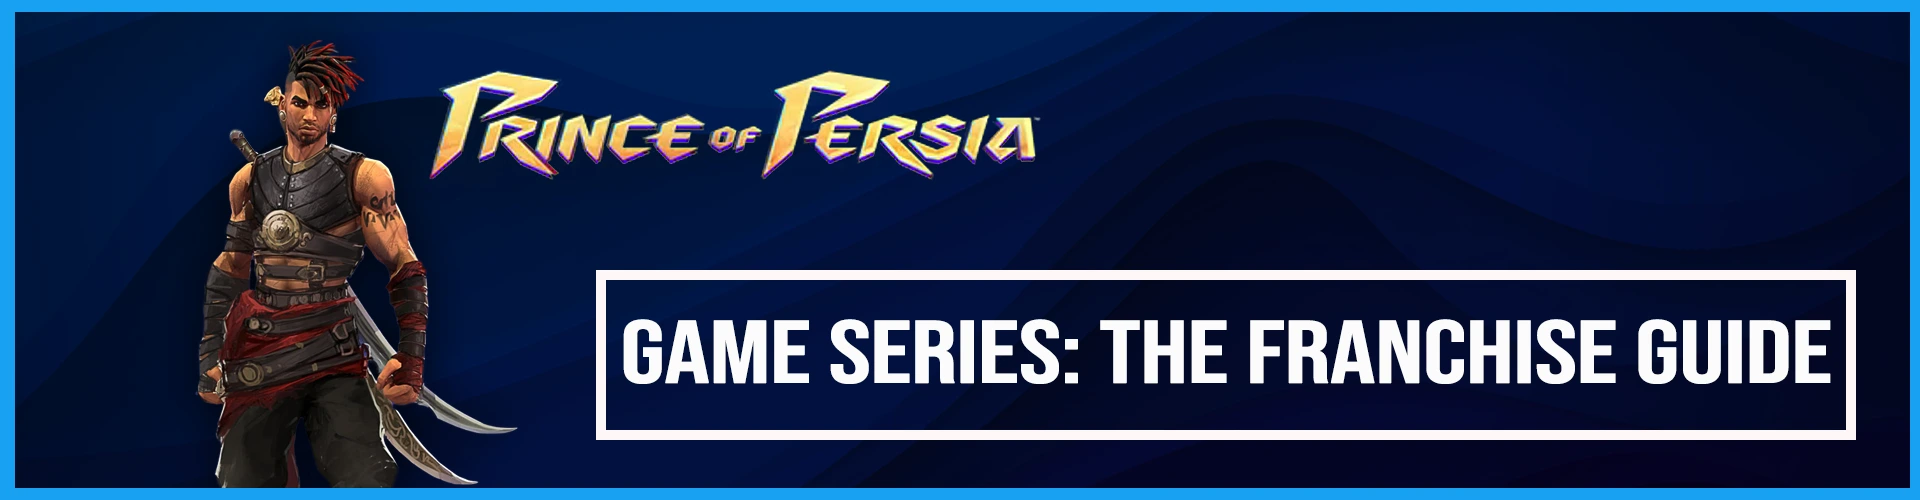 Serie di Giochi Prince of Persia: La Guida della Franchise